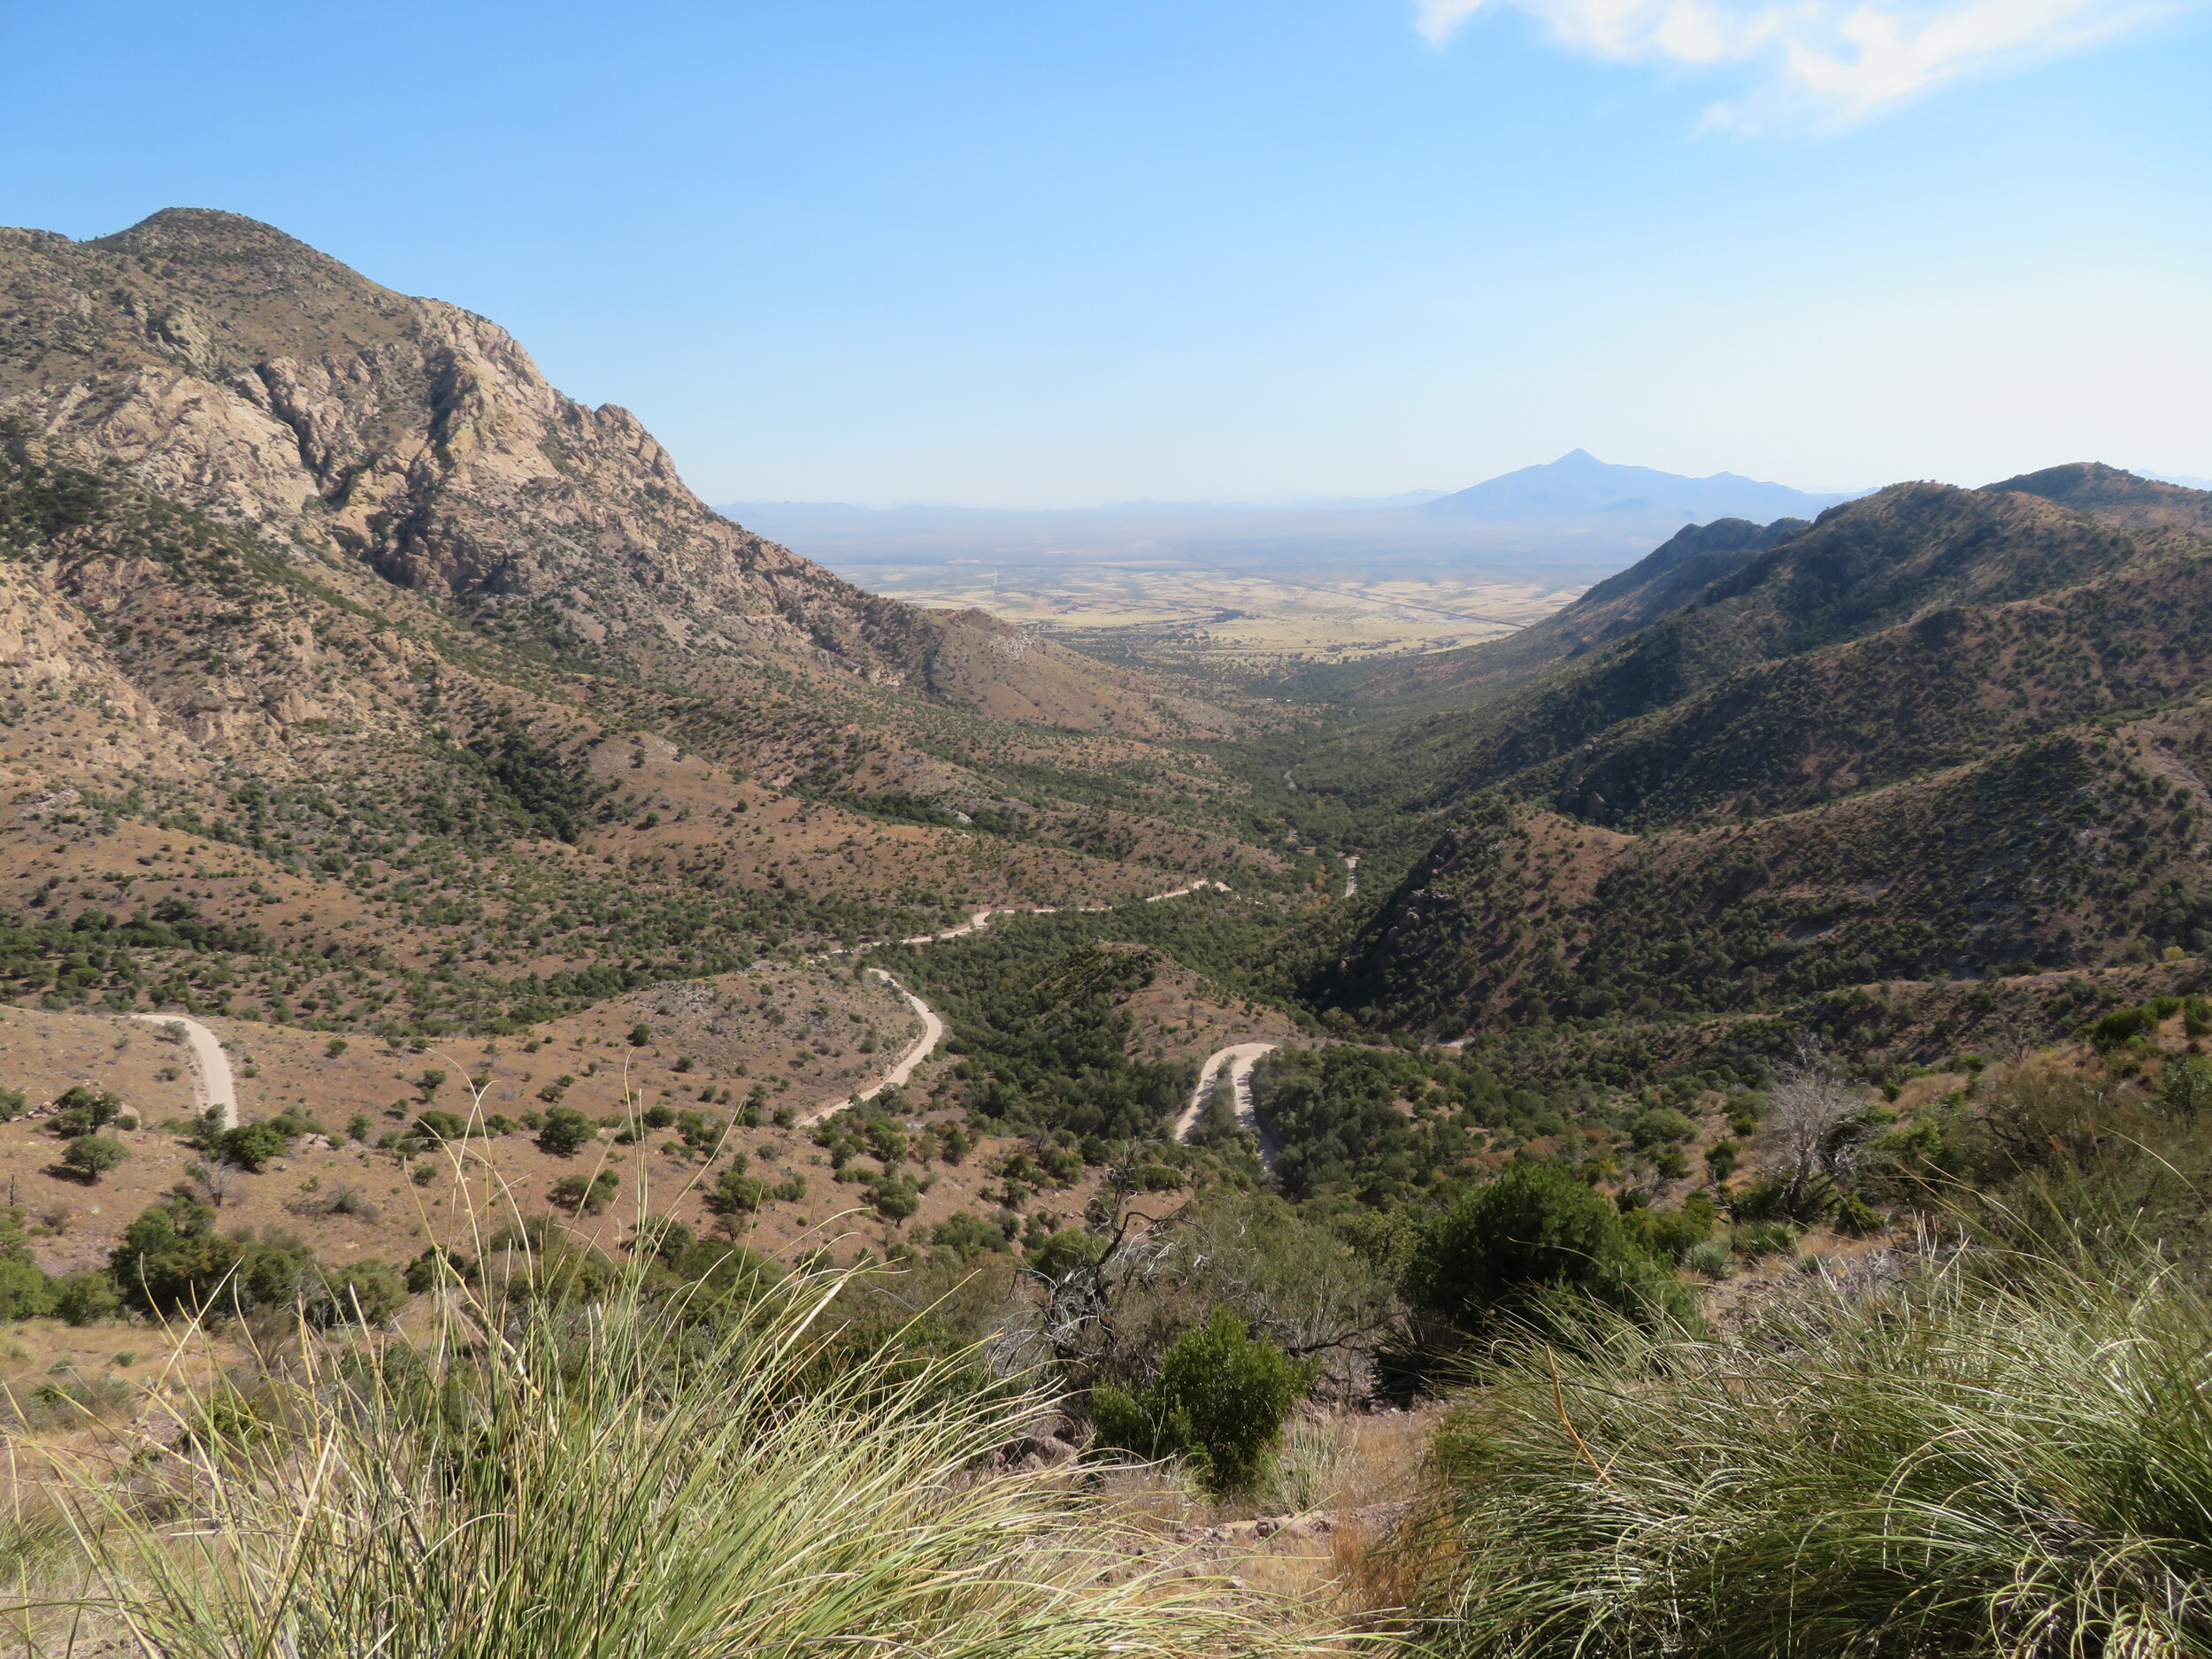 The circuitous road to Montezuma Pass